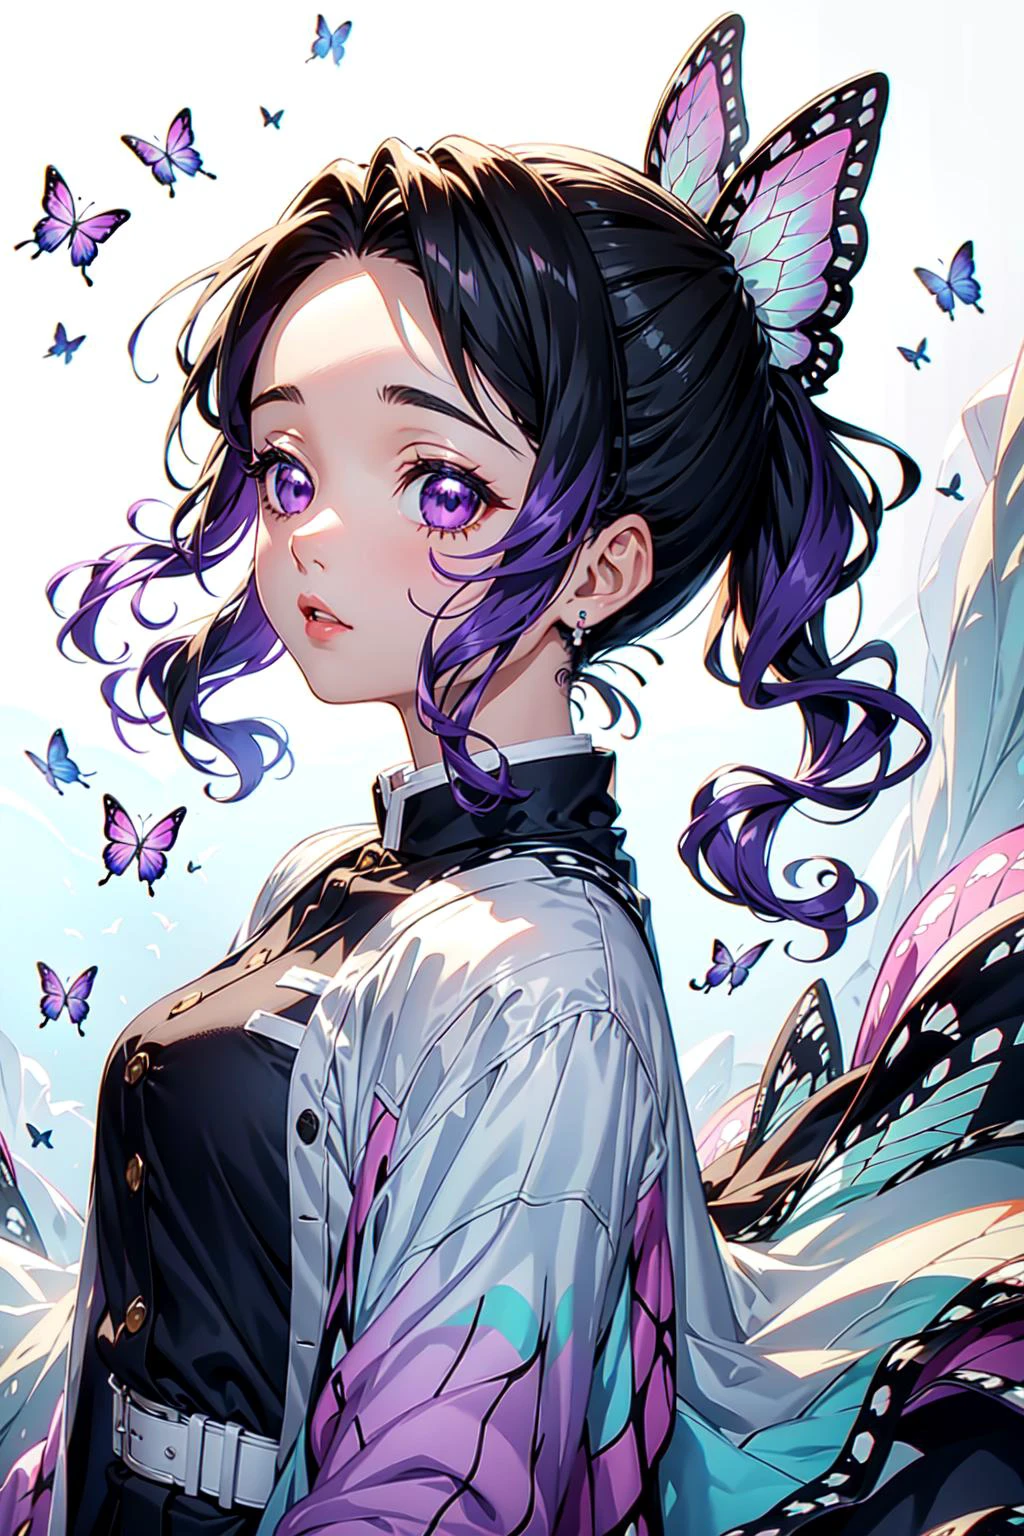 Аниме девушка с крыльями бабочки и фиолетовыми волосами - SeaArt AI